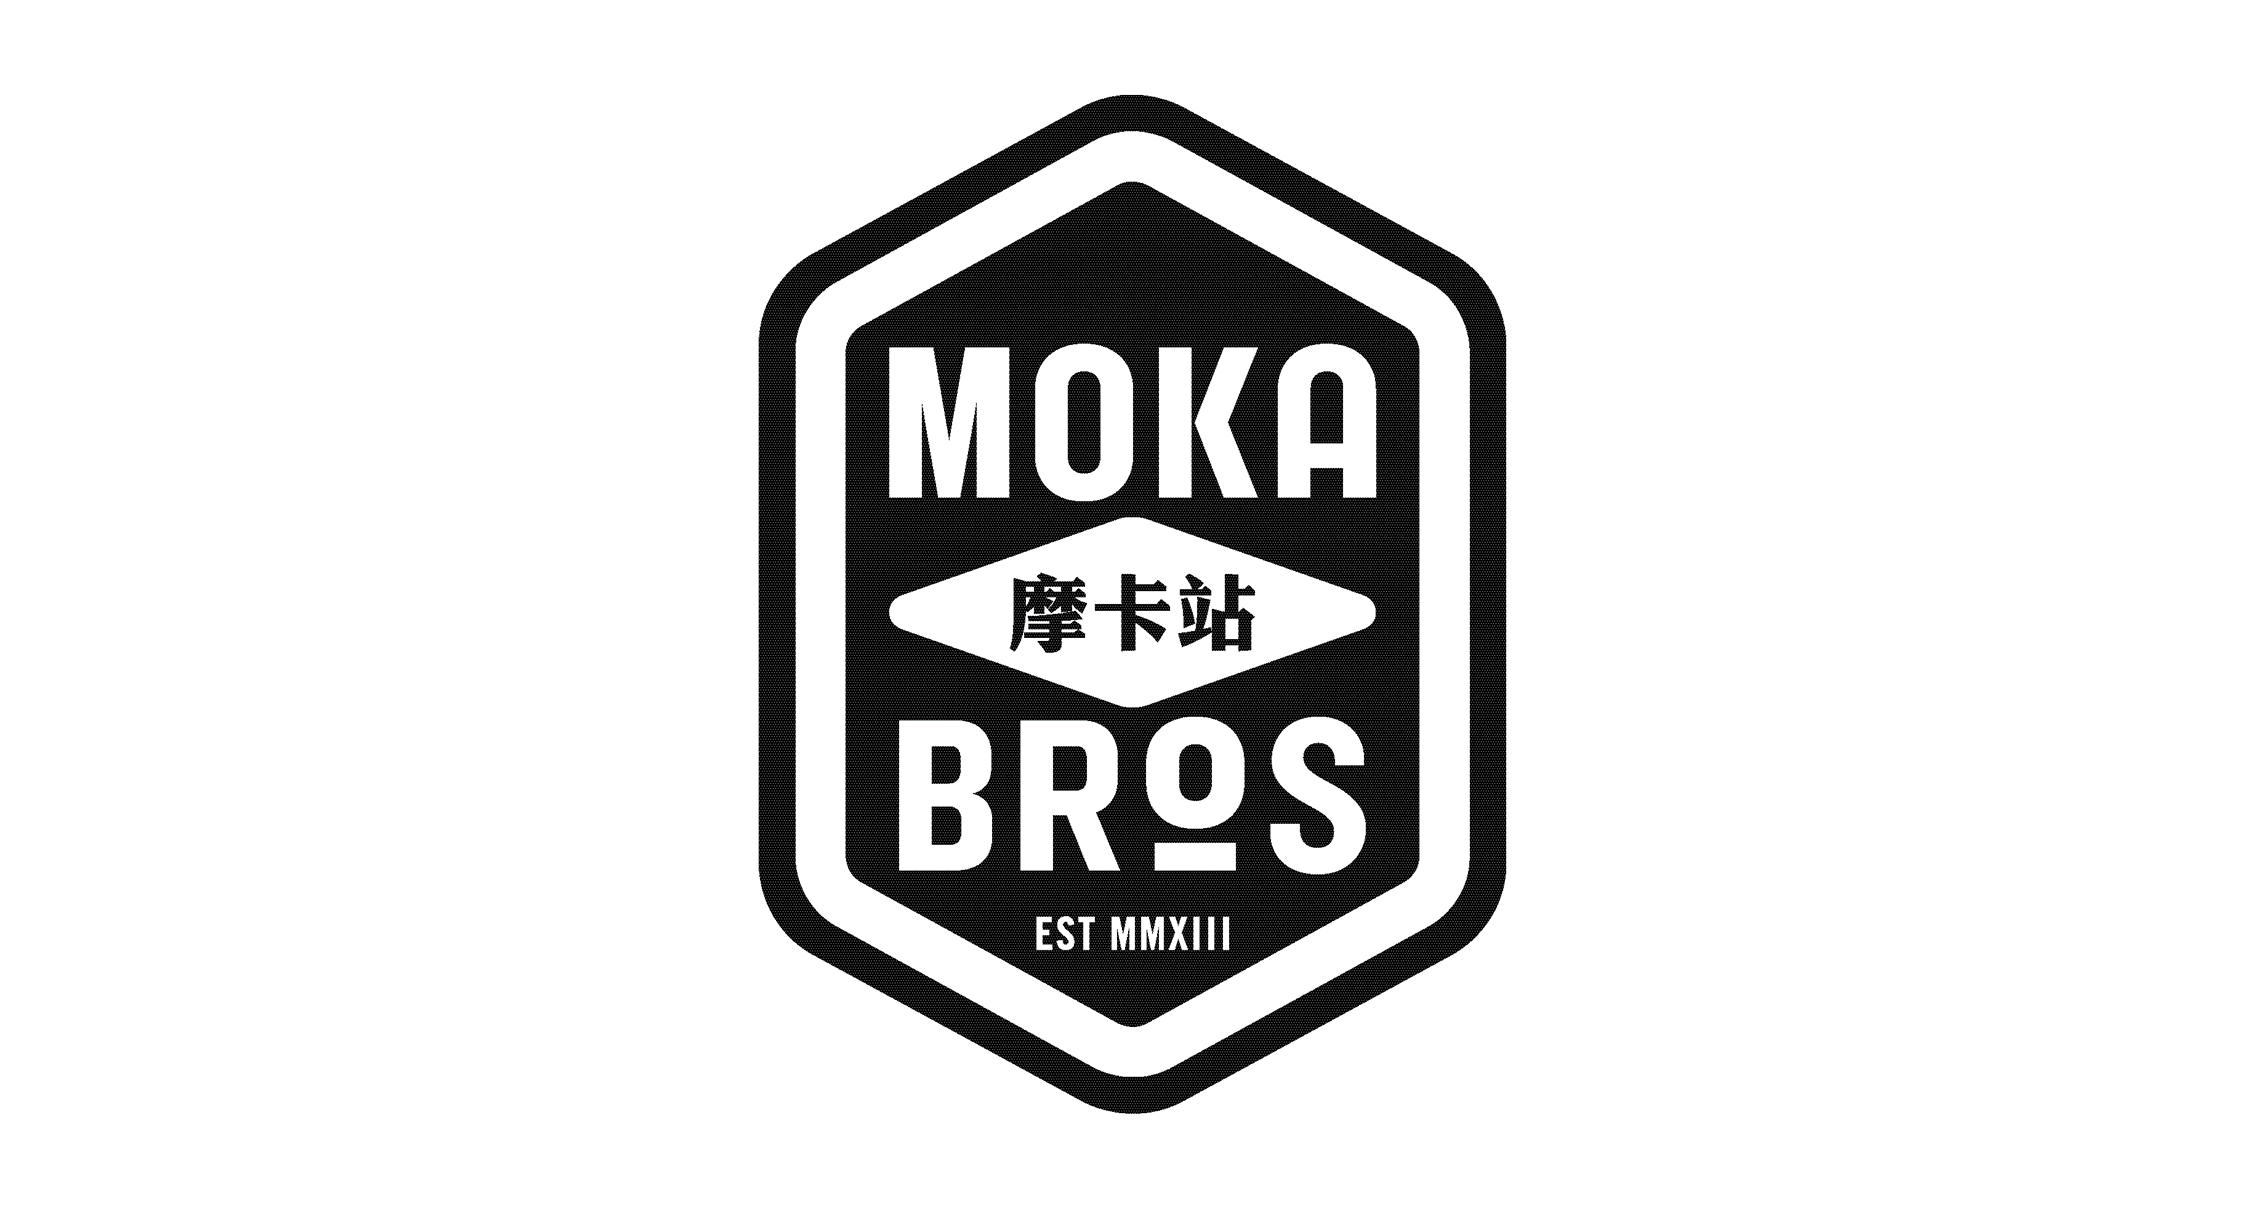 Moka Bros